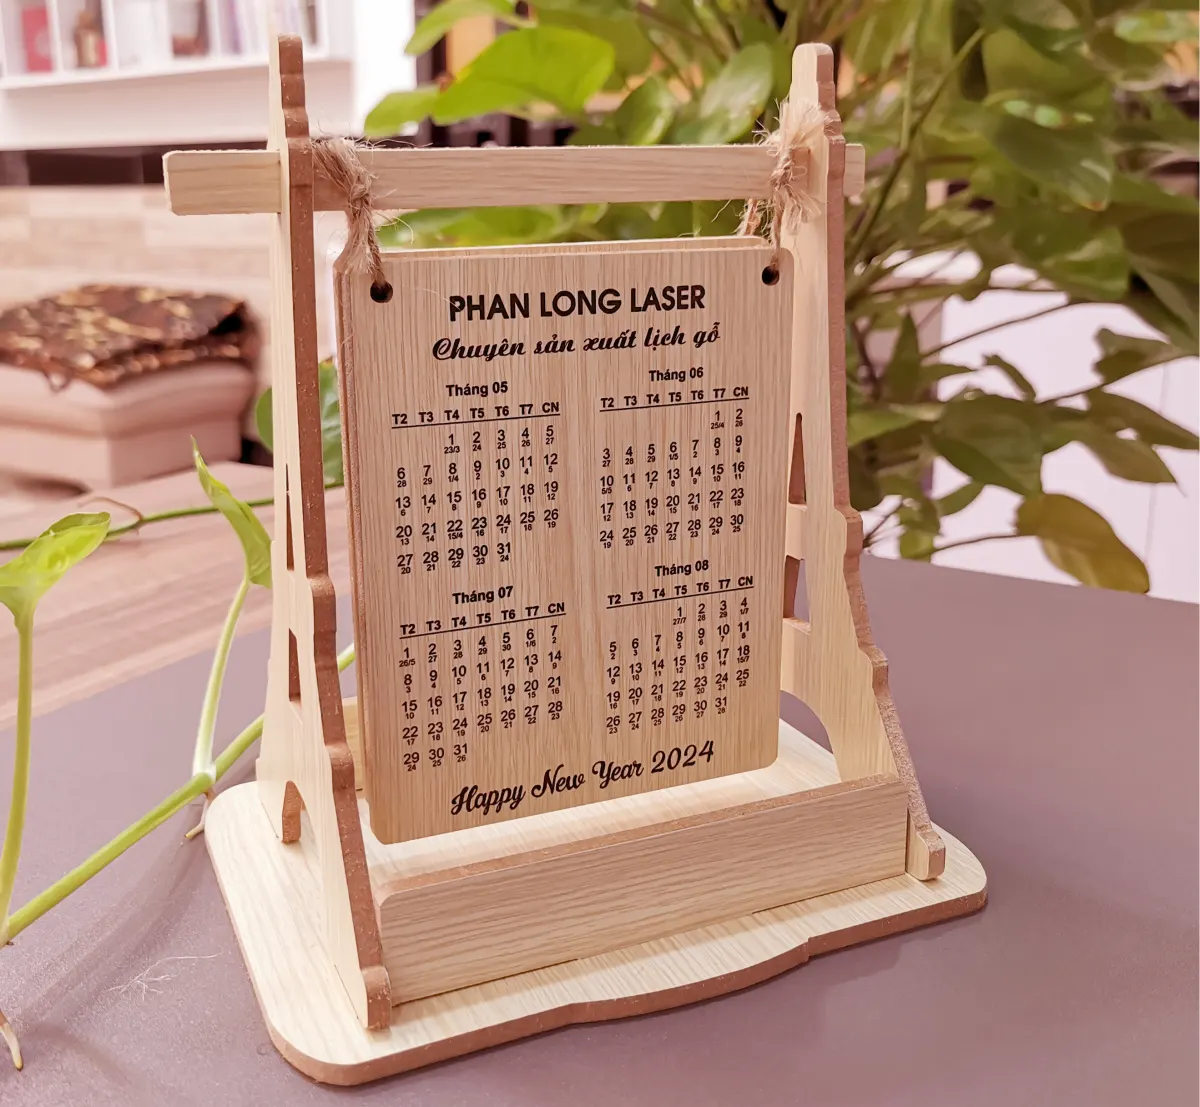 Thiết kế và sản xuất làm lịch gỗ để bàn theo yêu cầu cực nhanh lấy liền trong 3-5 phút tại TP Hồ Chí Minh, Hà Nội, Hải Phòng, Đà Nẵng, Cần Thơ